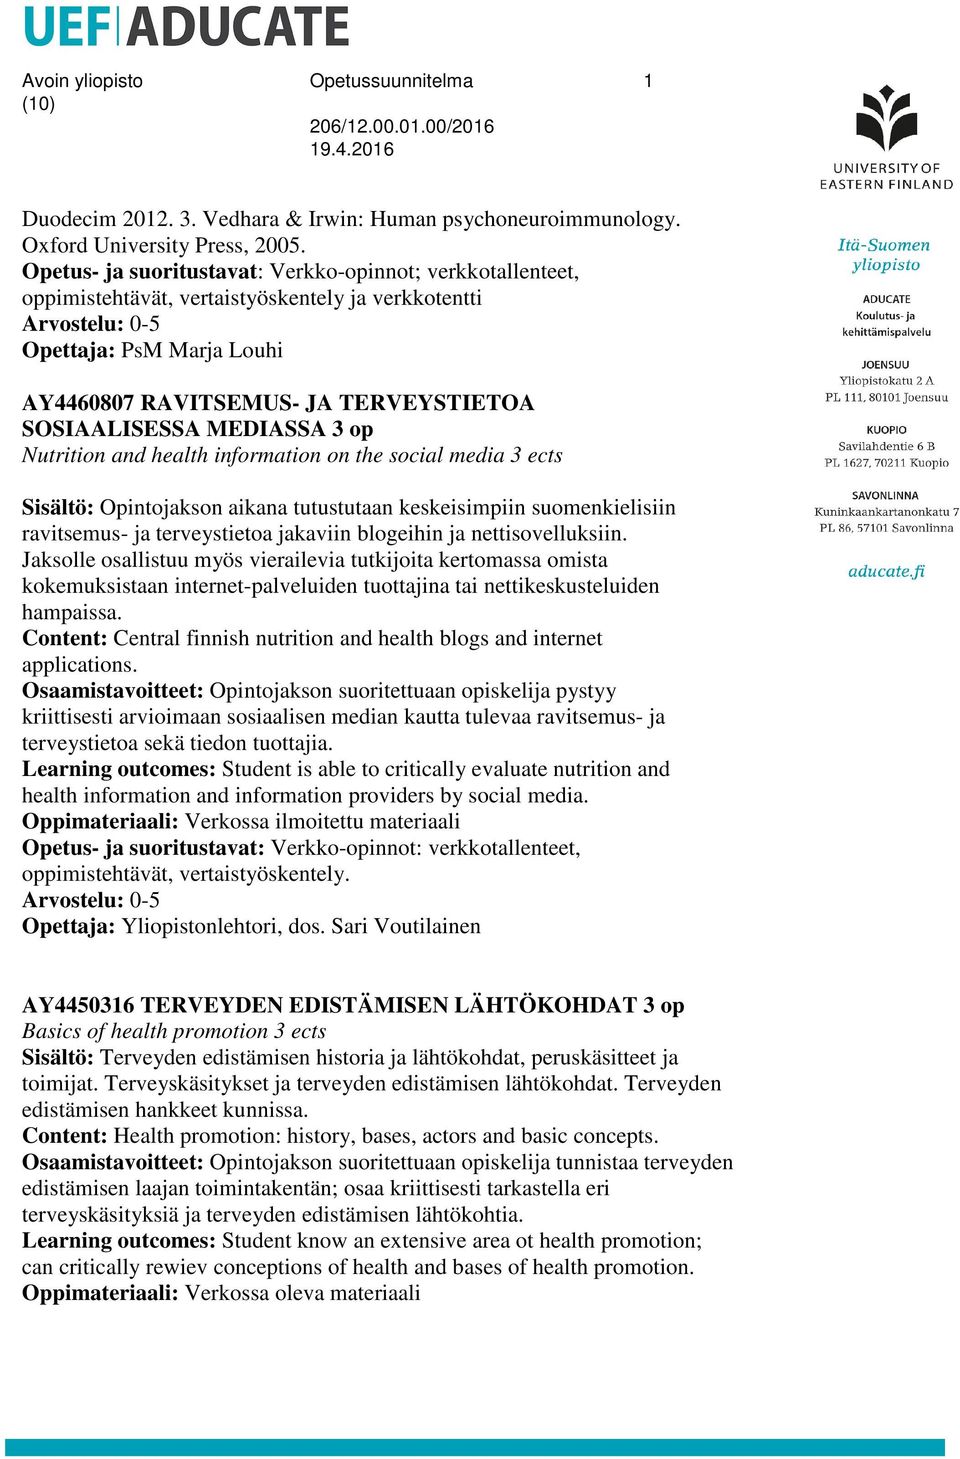 SOSIAALISESSA MEDIASSA 3 op Nutrition and health information on the social media 3 ects Sisältö: Opintojakson aikana tutustutaan keskeisimpiin suomenkielisiin ravitsemus- ja terveystietoa jakaviin